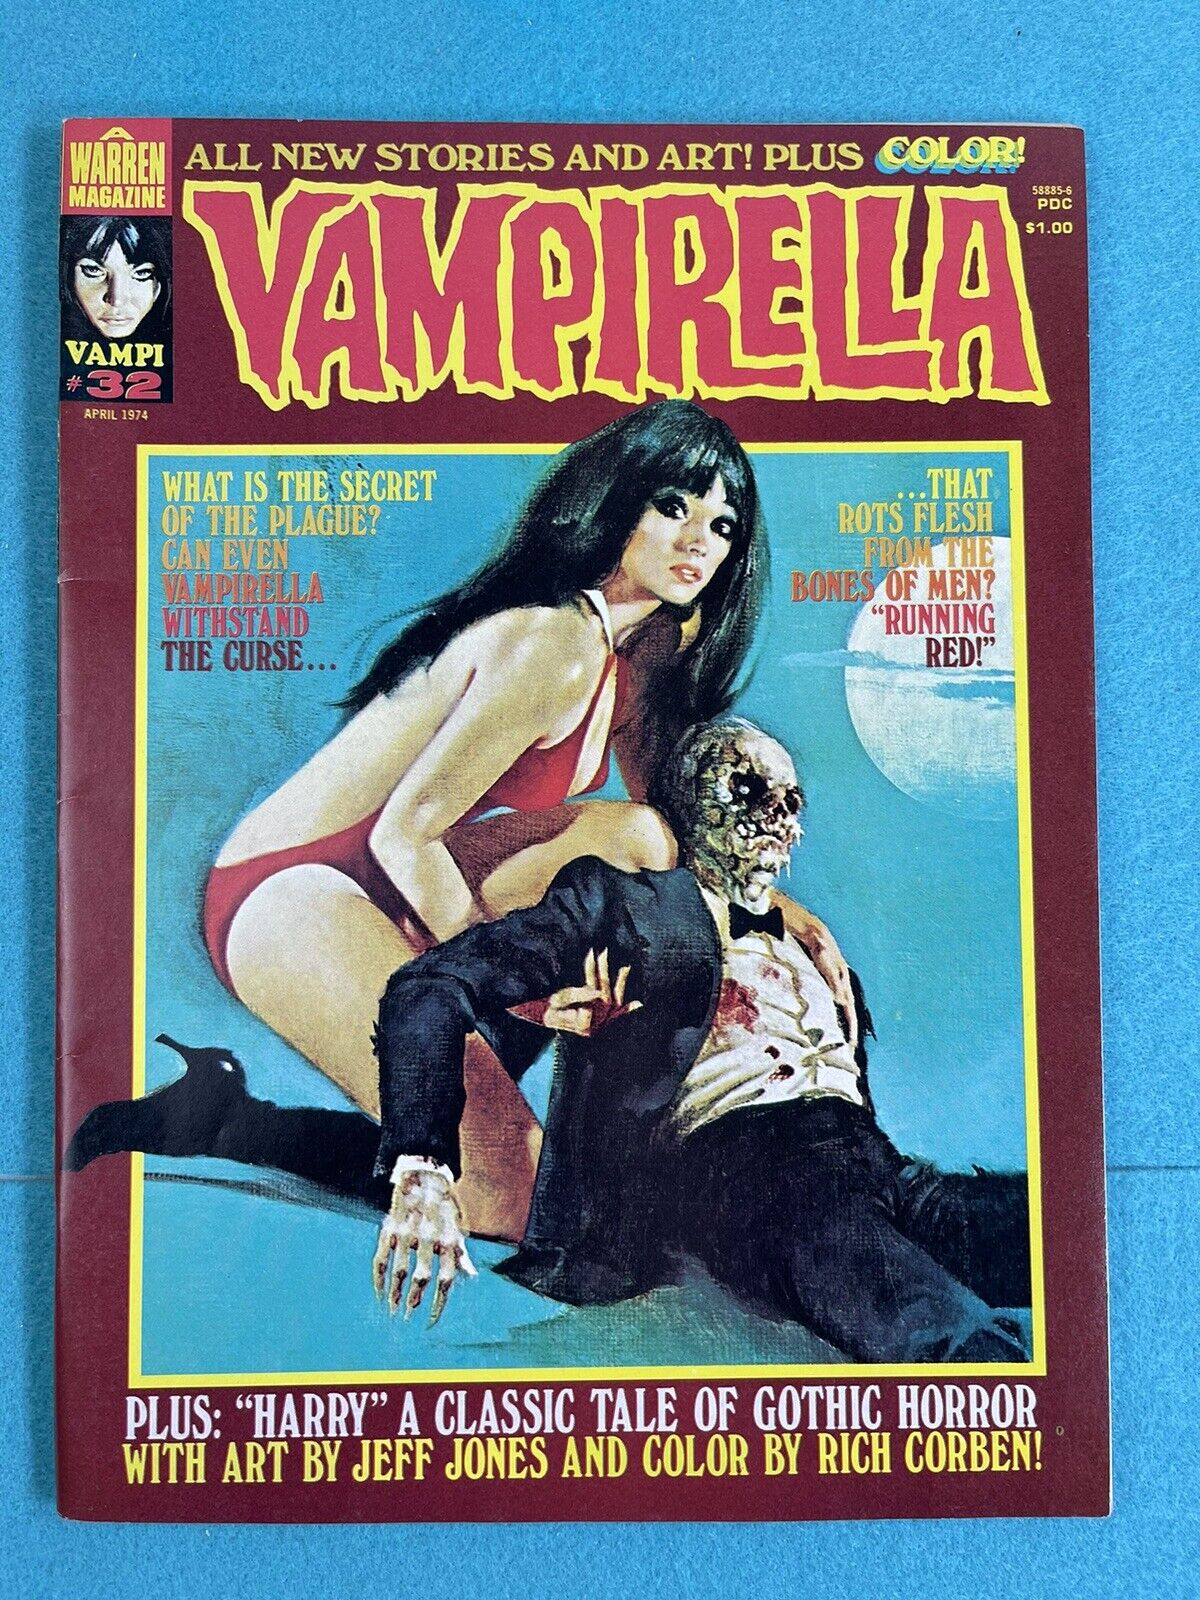 Vampirella #32  -  1974 Warren Comics Magazine FN+